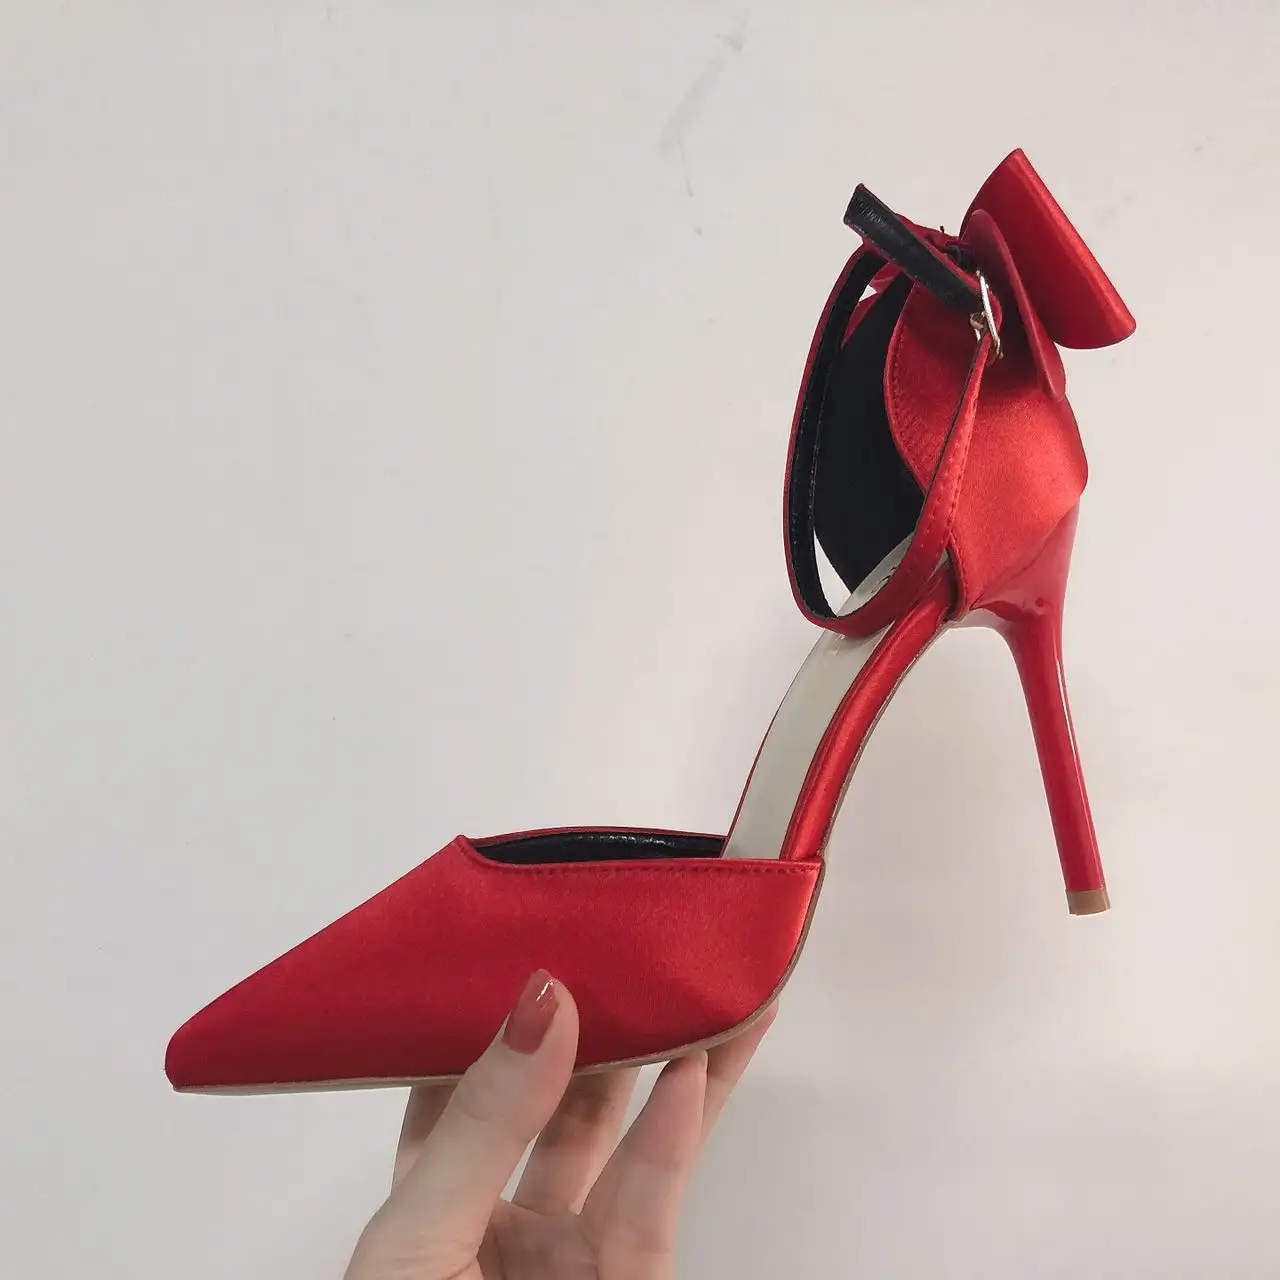 Tacones รองเท้าส้นตึก Altos สำหรับผู้หญิง,รองเท้าส้นสูงสีแดงดีไซน์ติดโบว์ผีเสื้อสำหรับผู้หญิงรองเท้าปั๊มสำหรับฤดูร้อน